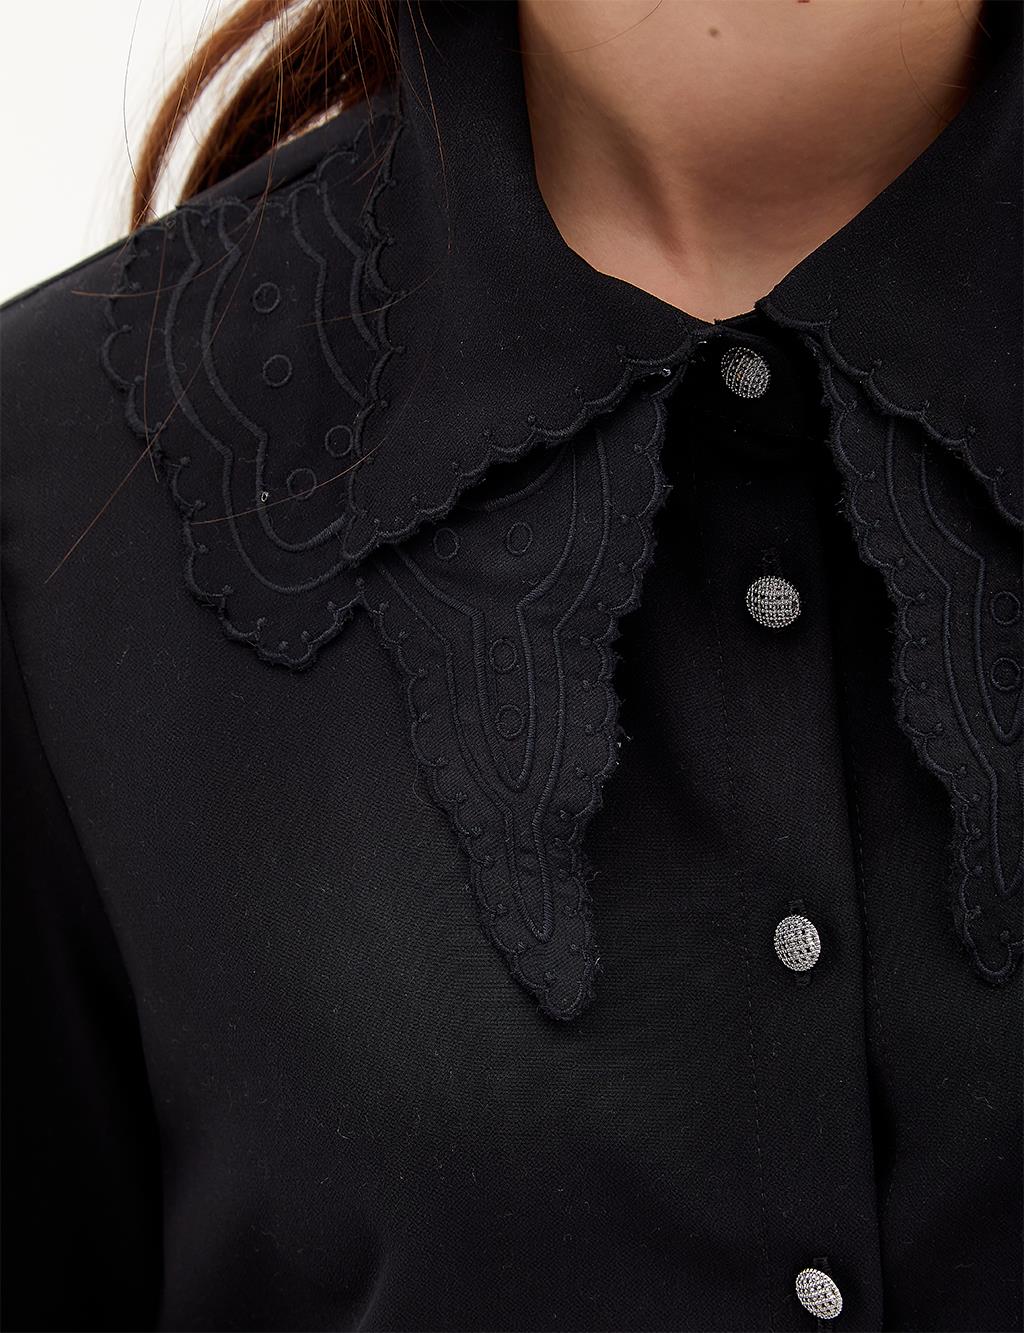 Collar Detailed Shirt Black